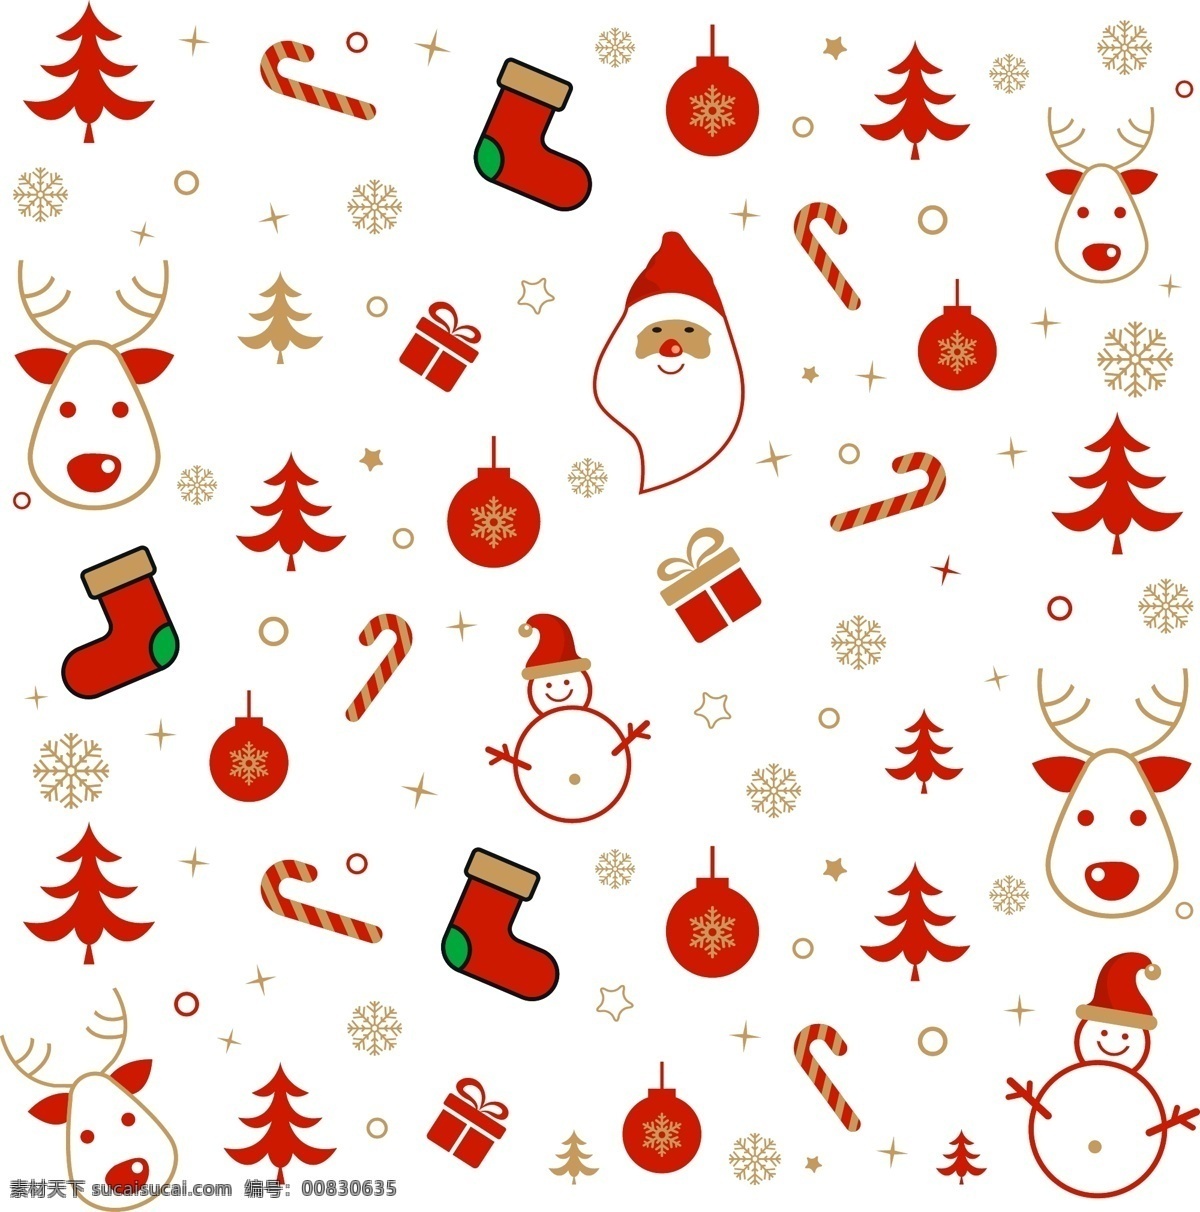 矢量 圣诞节 底纹 雪人 圣诞老人 麋鹿 圣诞袜子 圣诞树 金色雪花 礼物 底纹边框 其他素材